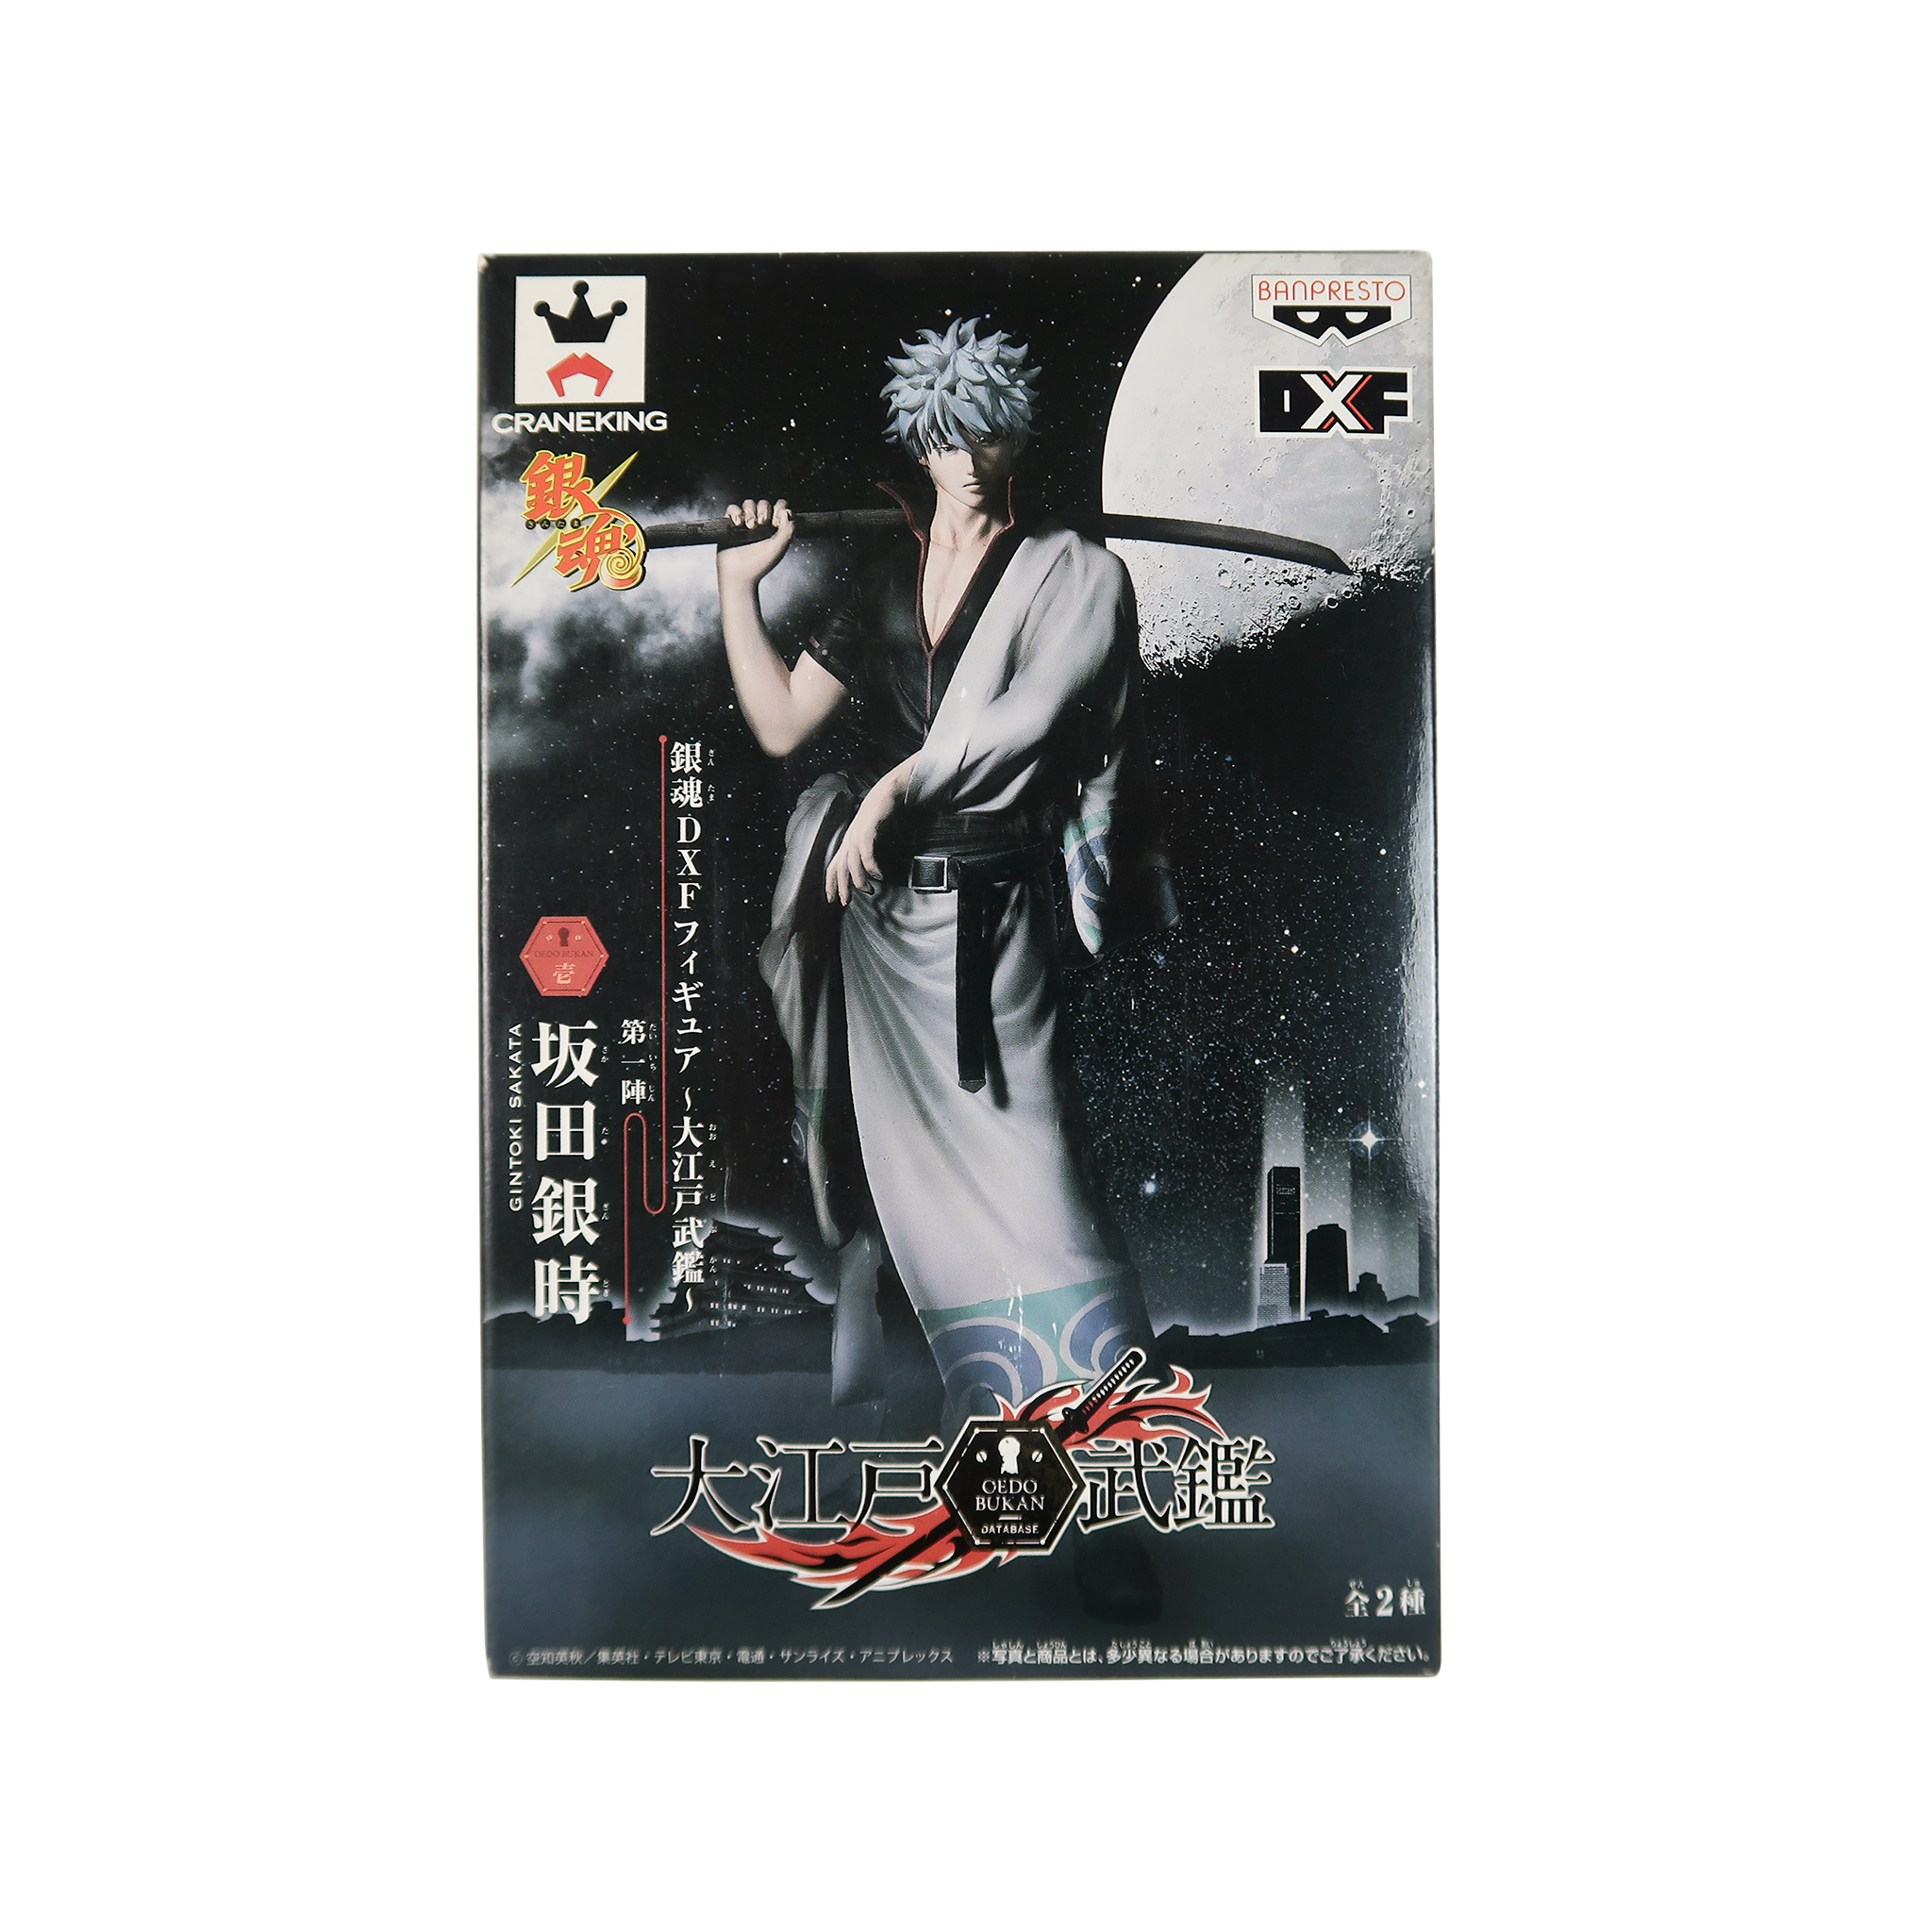 Gintama "Gintoki Sakata" – DXF Oedo Bukan Figure